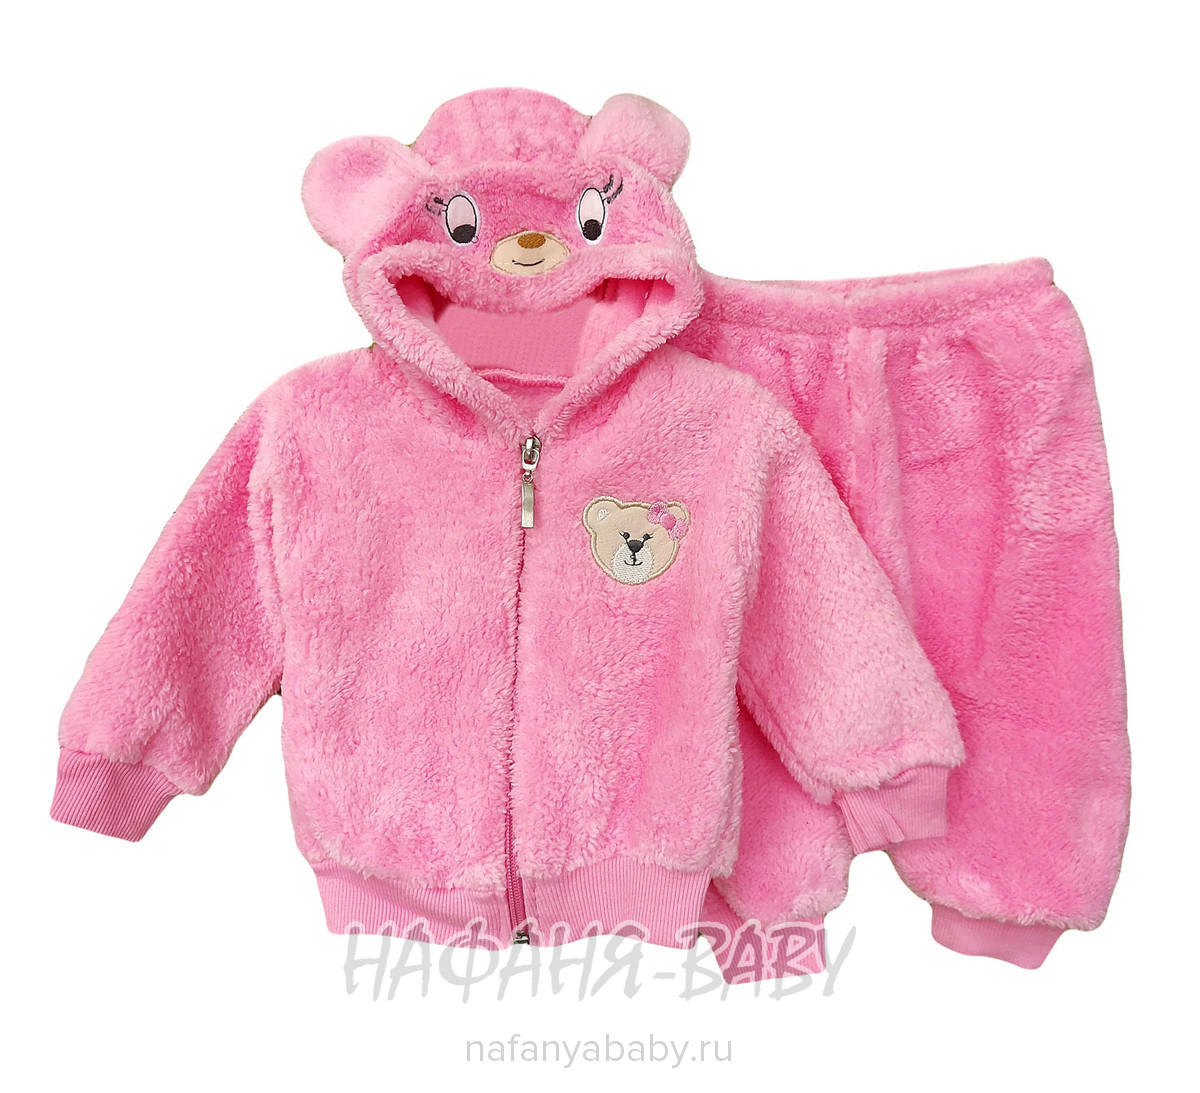 Детский костюм (кофта+брючки) KAGANIM арт: 1338, 0-12 мес, цвет розовый, оптом Турция